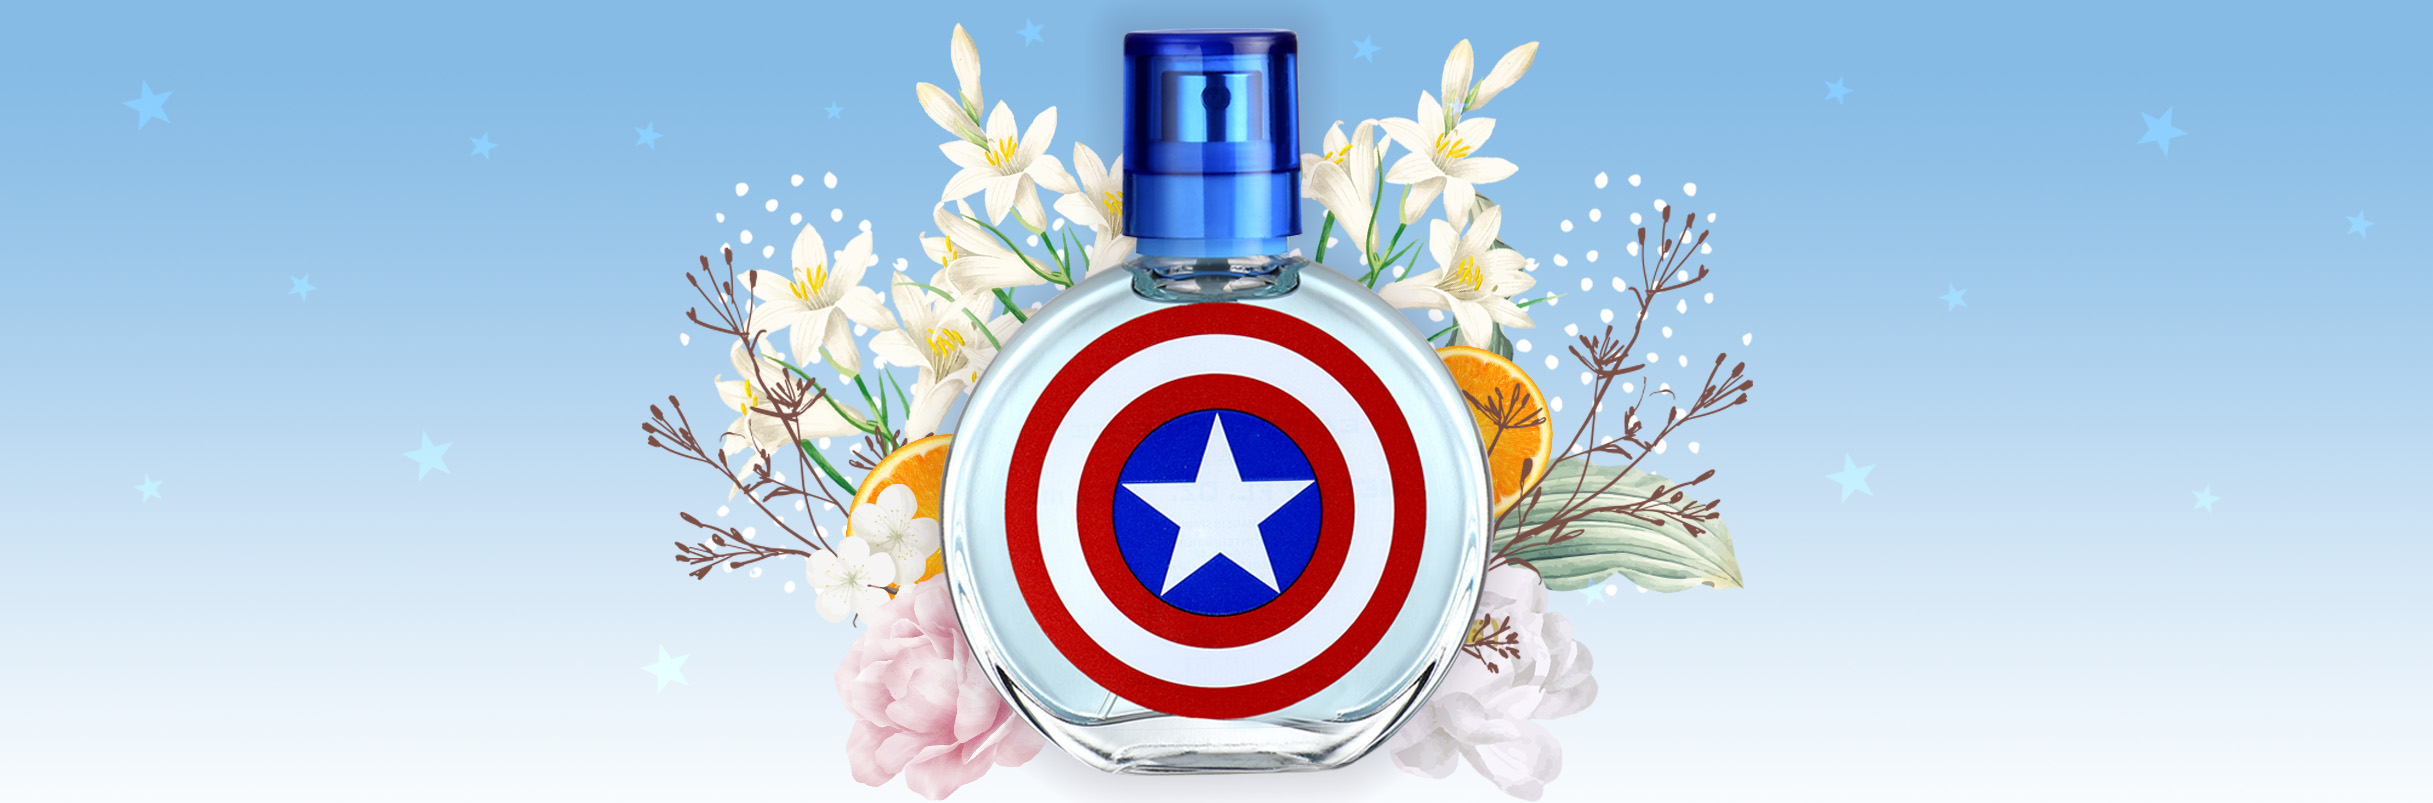 The Avengers fragrances